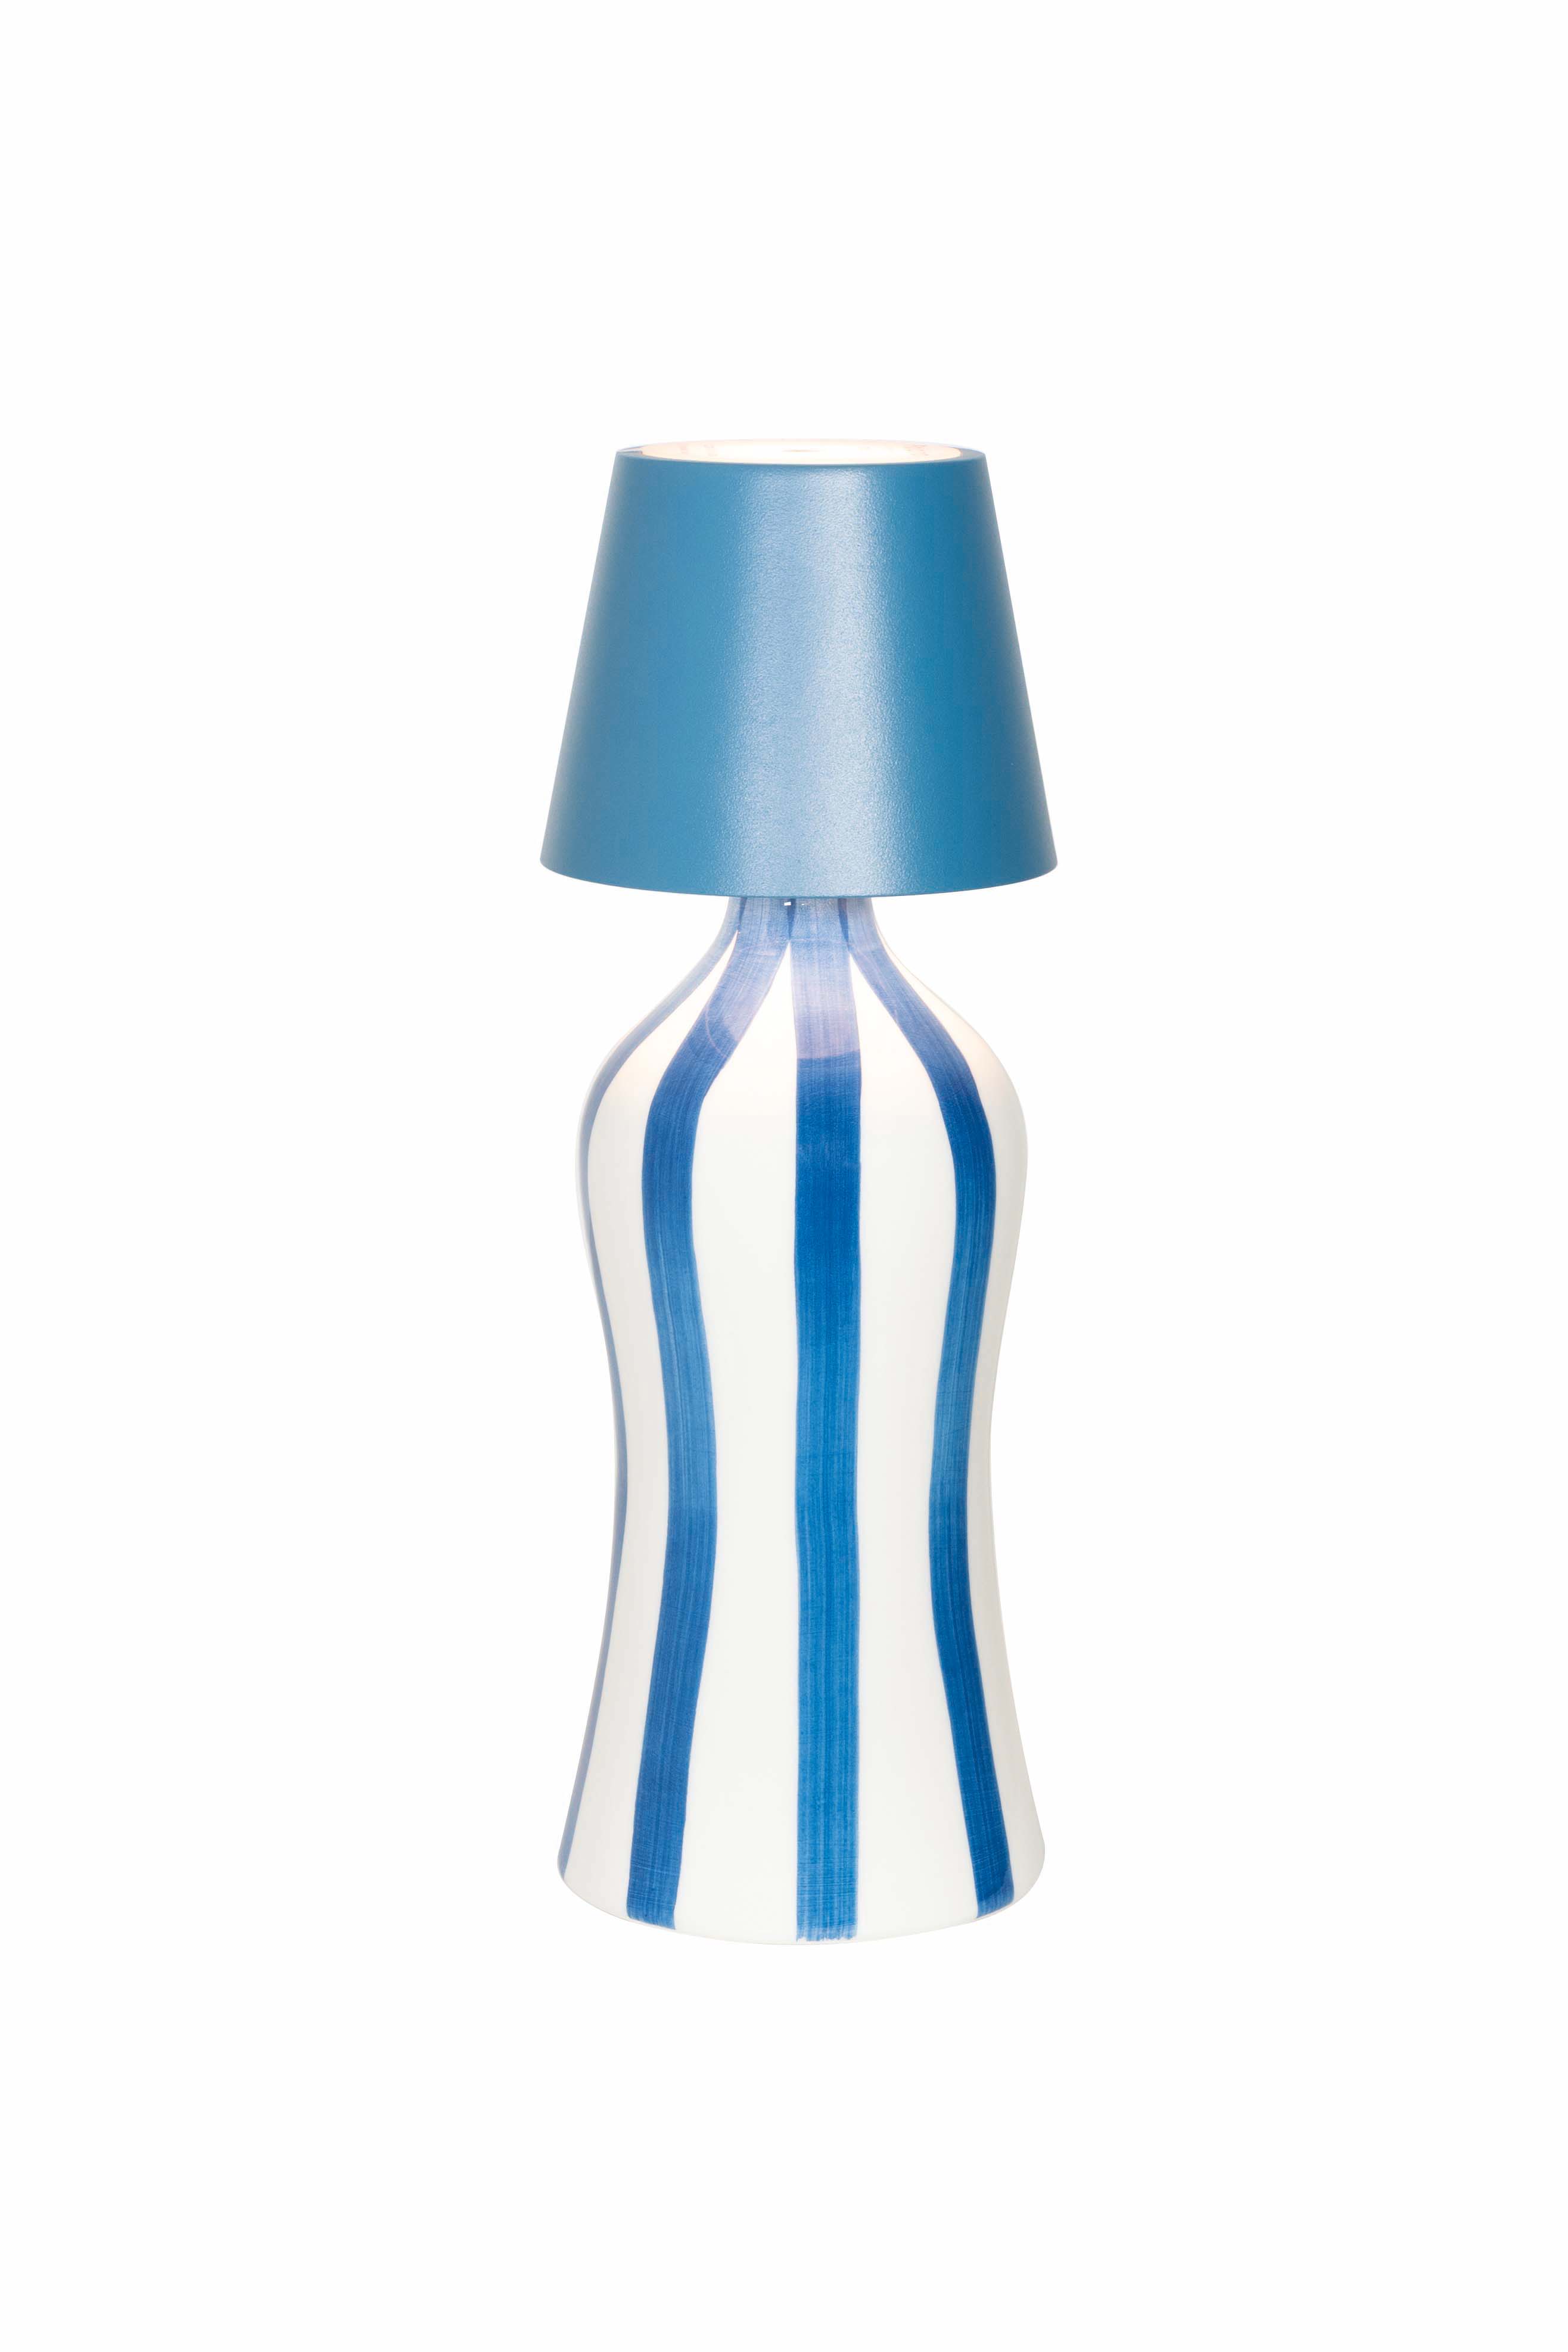 Zafferano Poldina Stopper Blu Avio / Avio Blue + Lido Keramik Flasche mit vertikalen Streifen in Blau